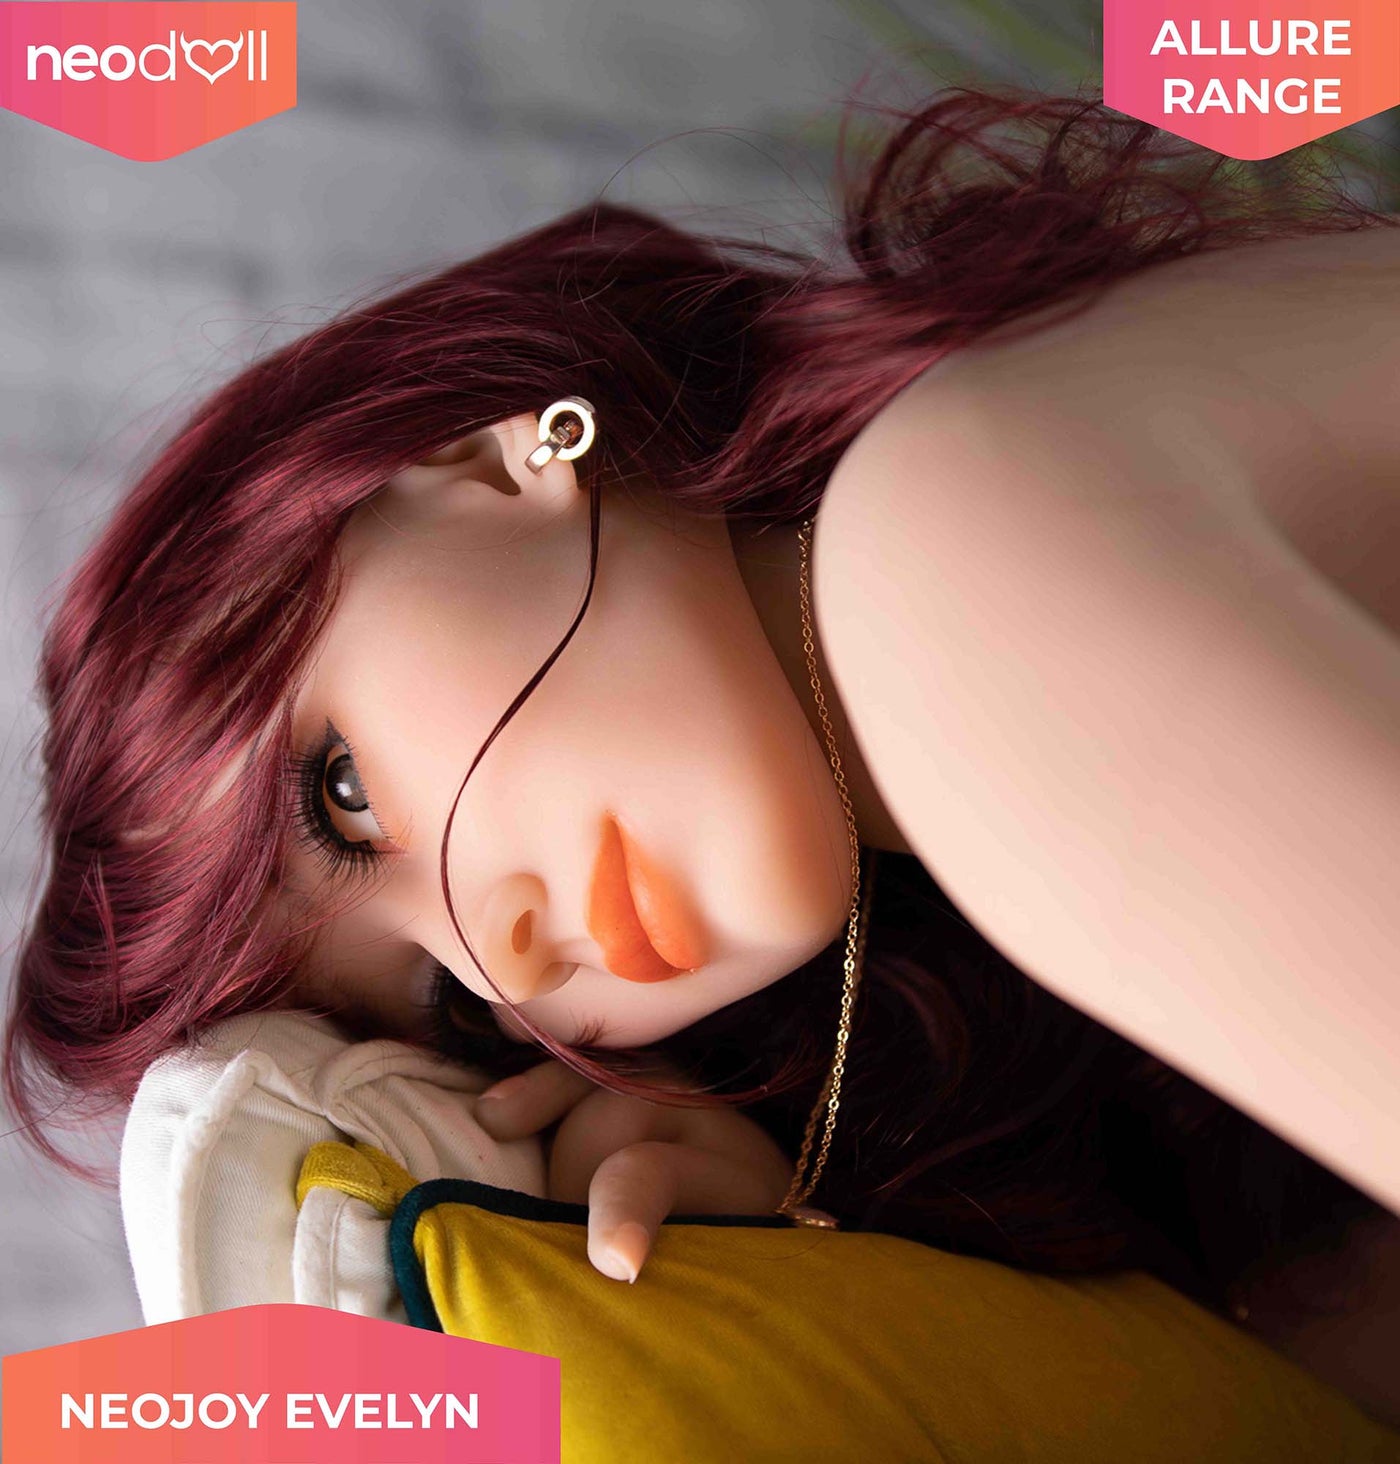 Neodoll Allure - Evelyn - Realistic Sex Doll - 166cm - Tan